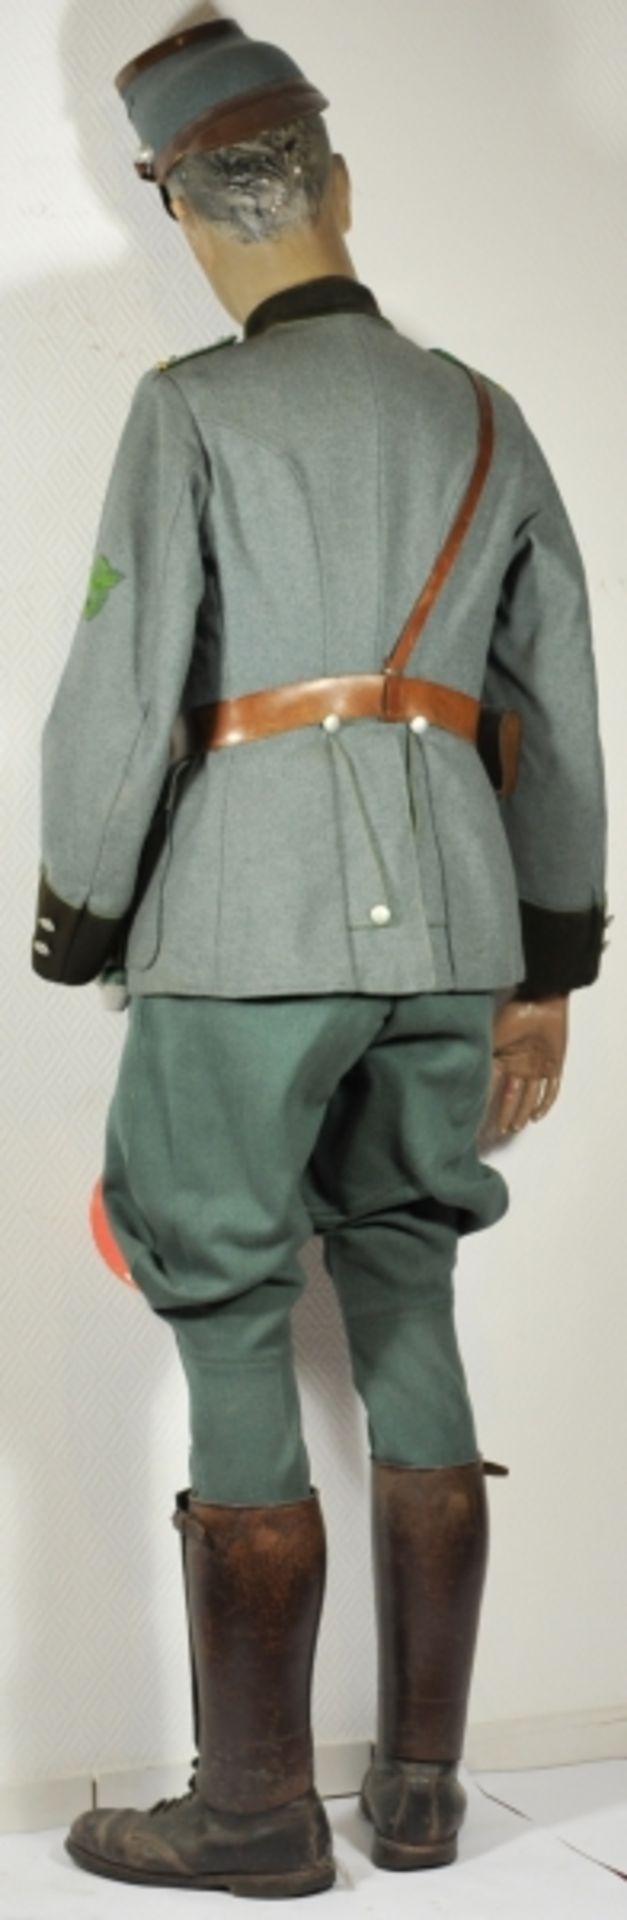 Uniformensemble eines Oberwachtmeister der Gendarmerie.Feldbluse mit vernähtem Band zum KVK II. - Image 3 of 3